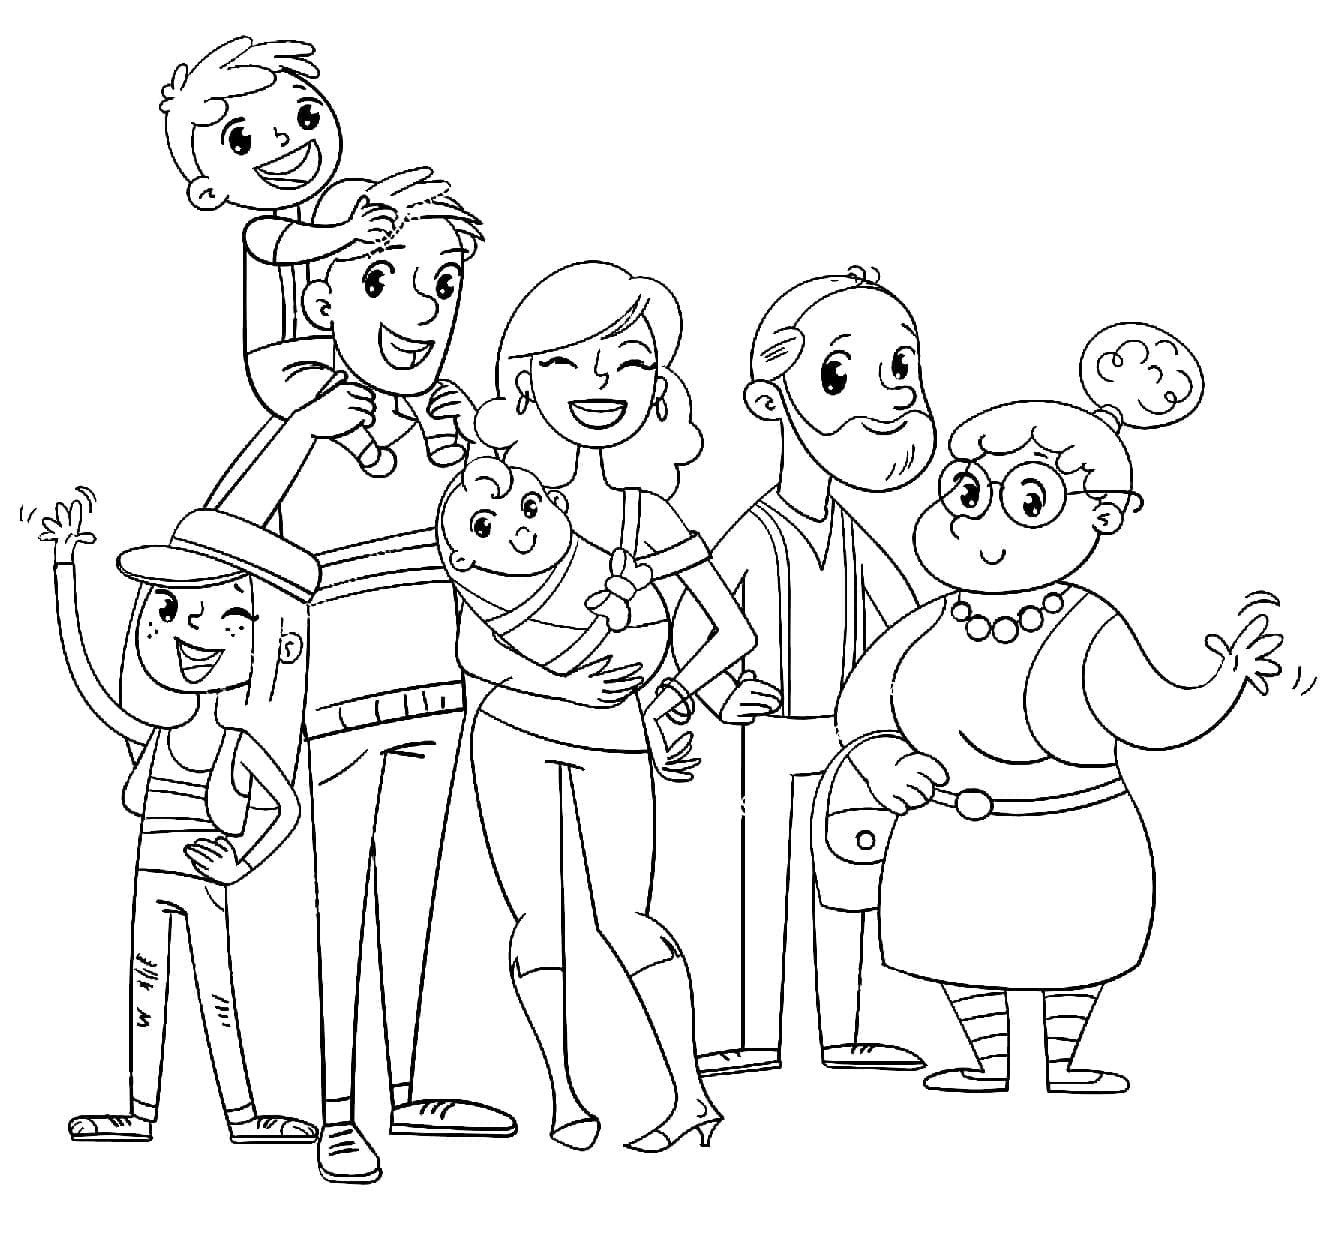 Une Famille Nombreuse coloring page